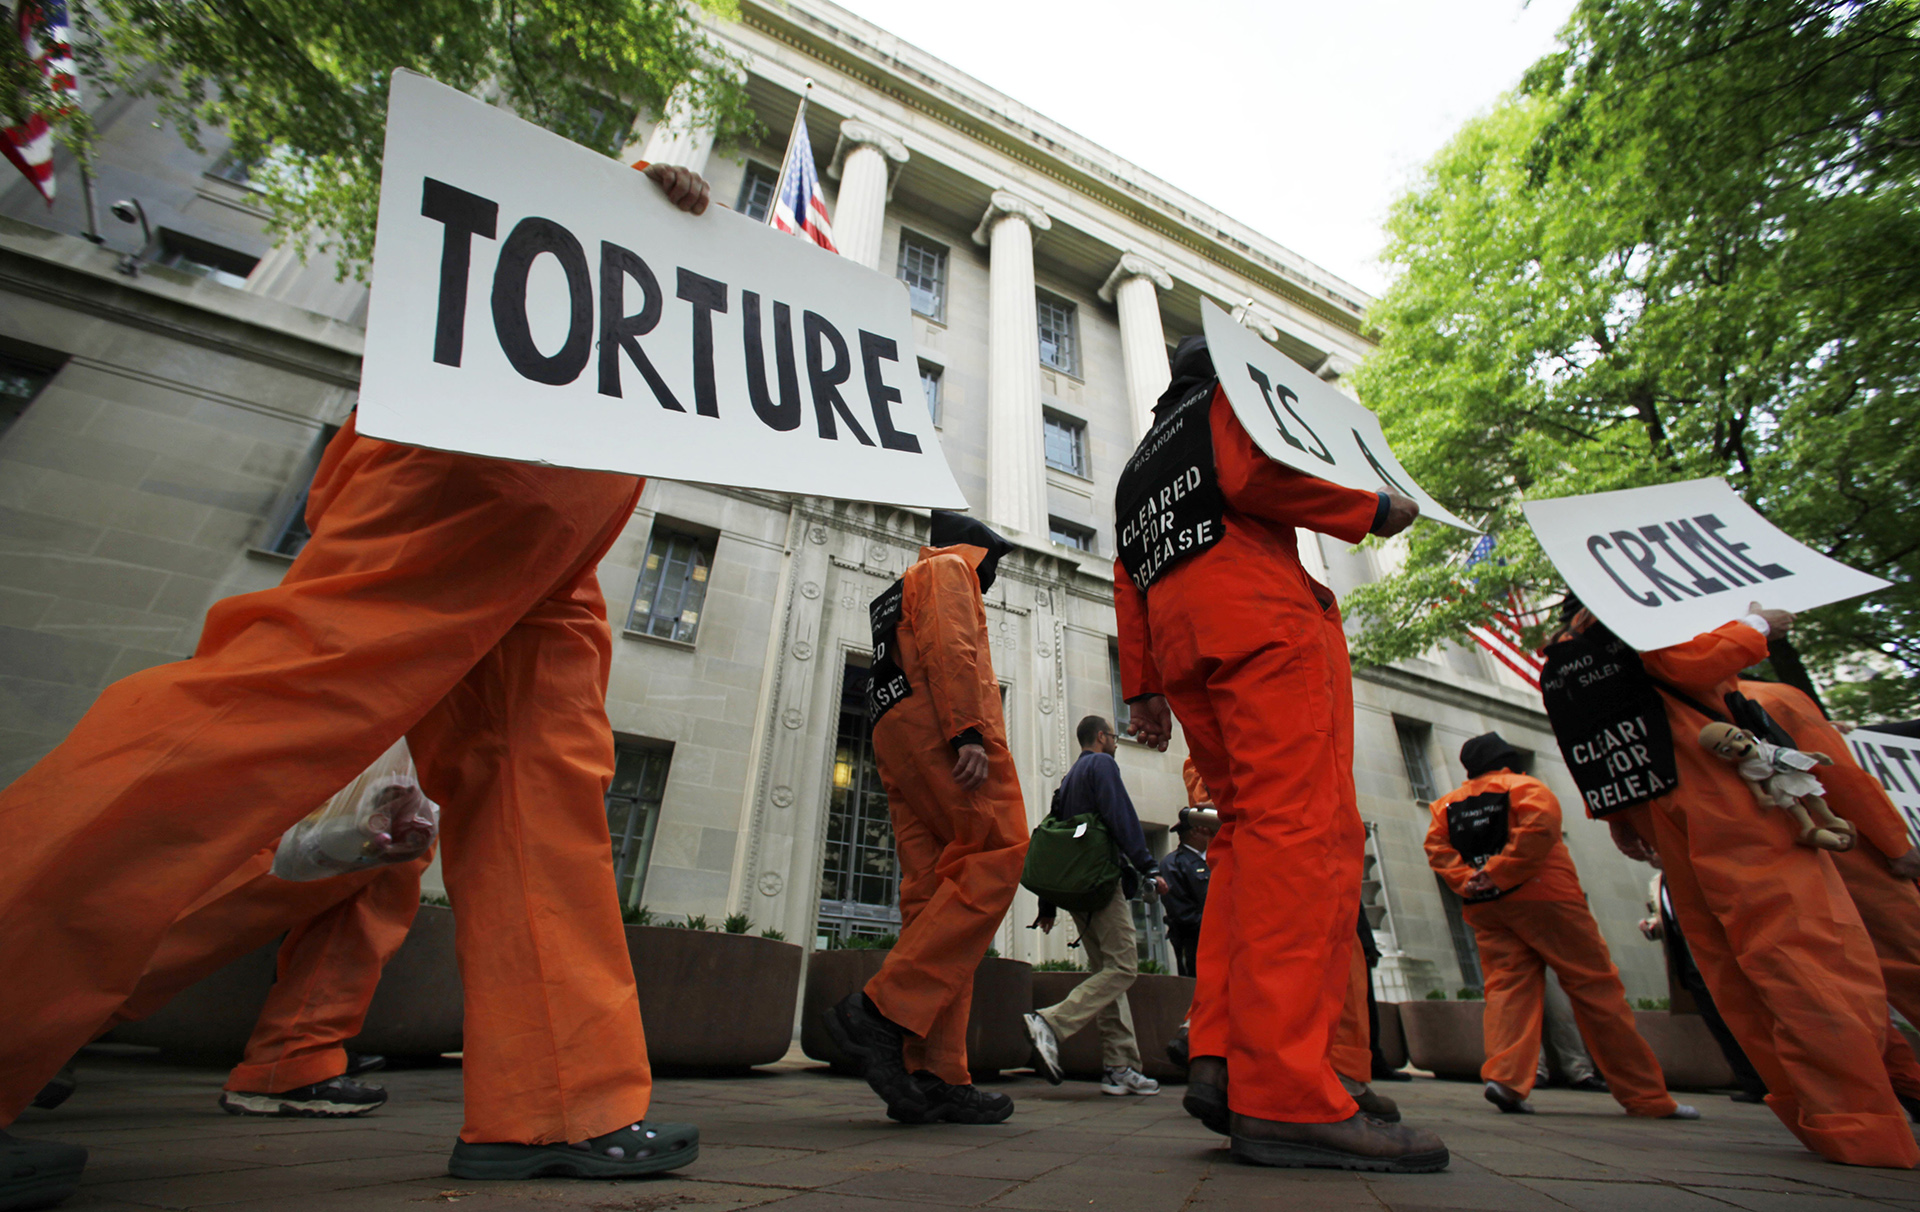 Participantes en una manifestación protestan contra la tortura en Guantánamo. (Foto: Manuel Balce Ceneta/AP)